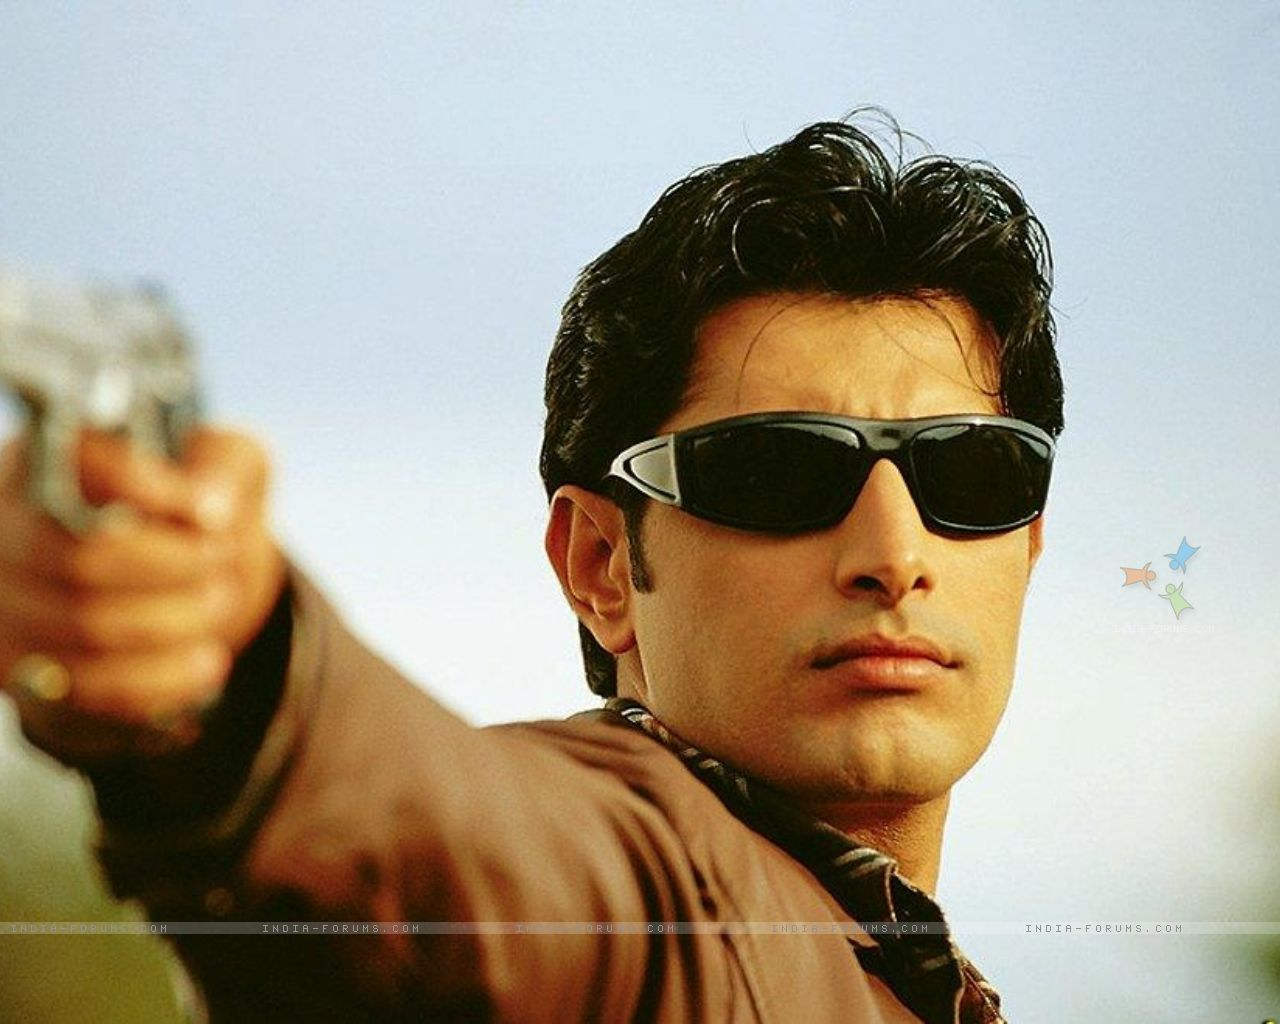 Priyanshu Chatterjee Holding Gun